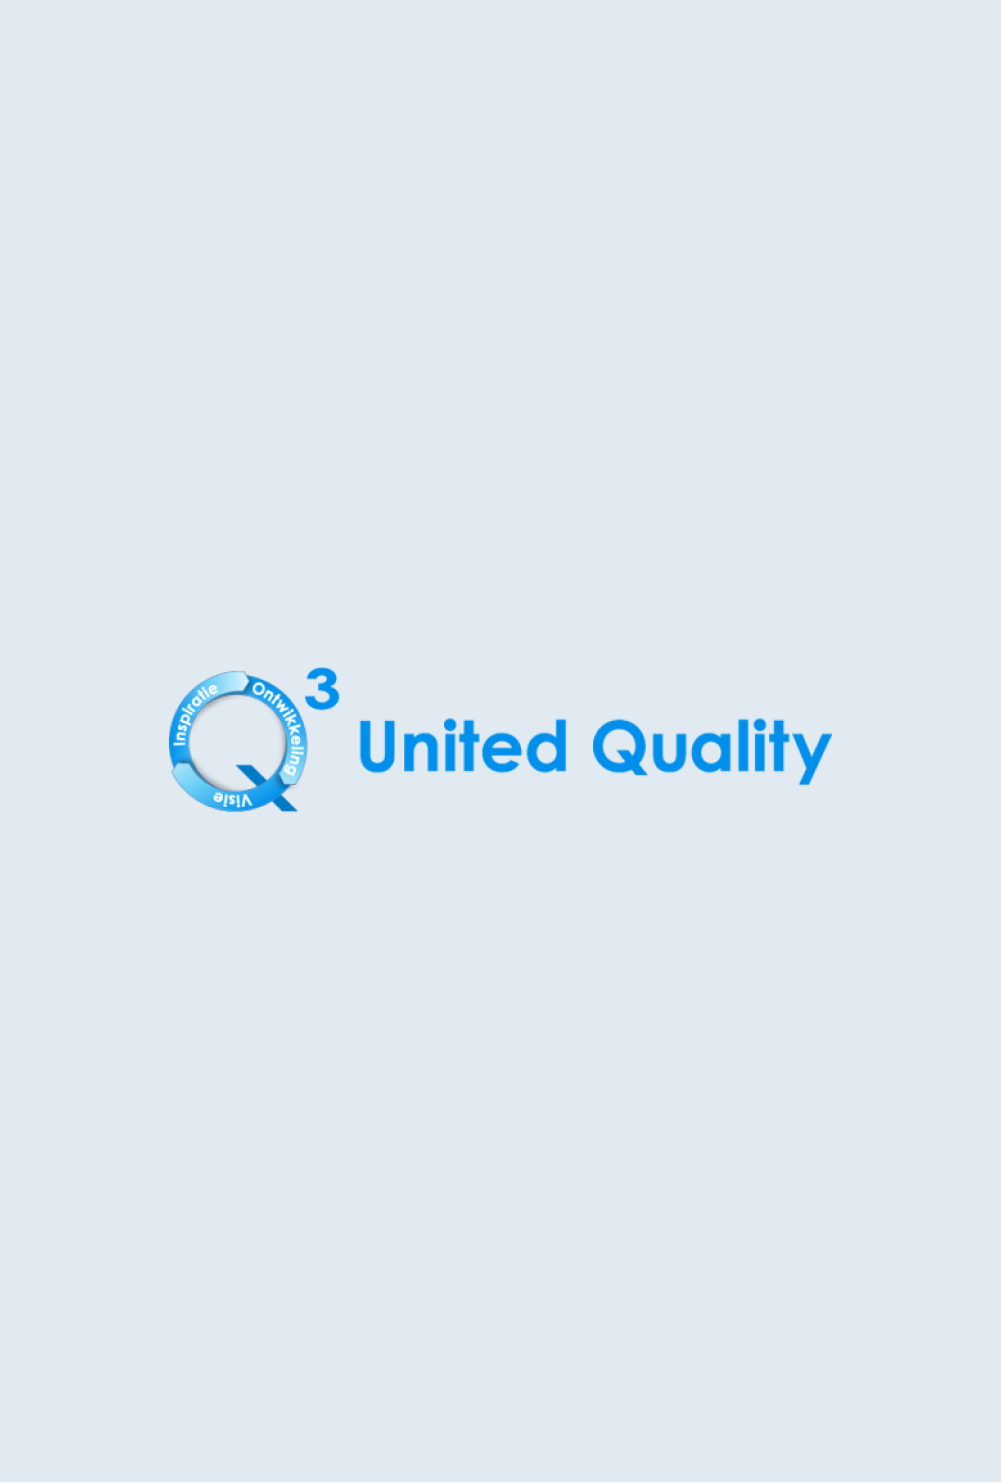 United Quality